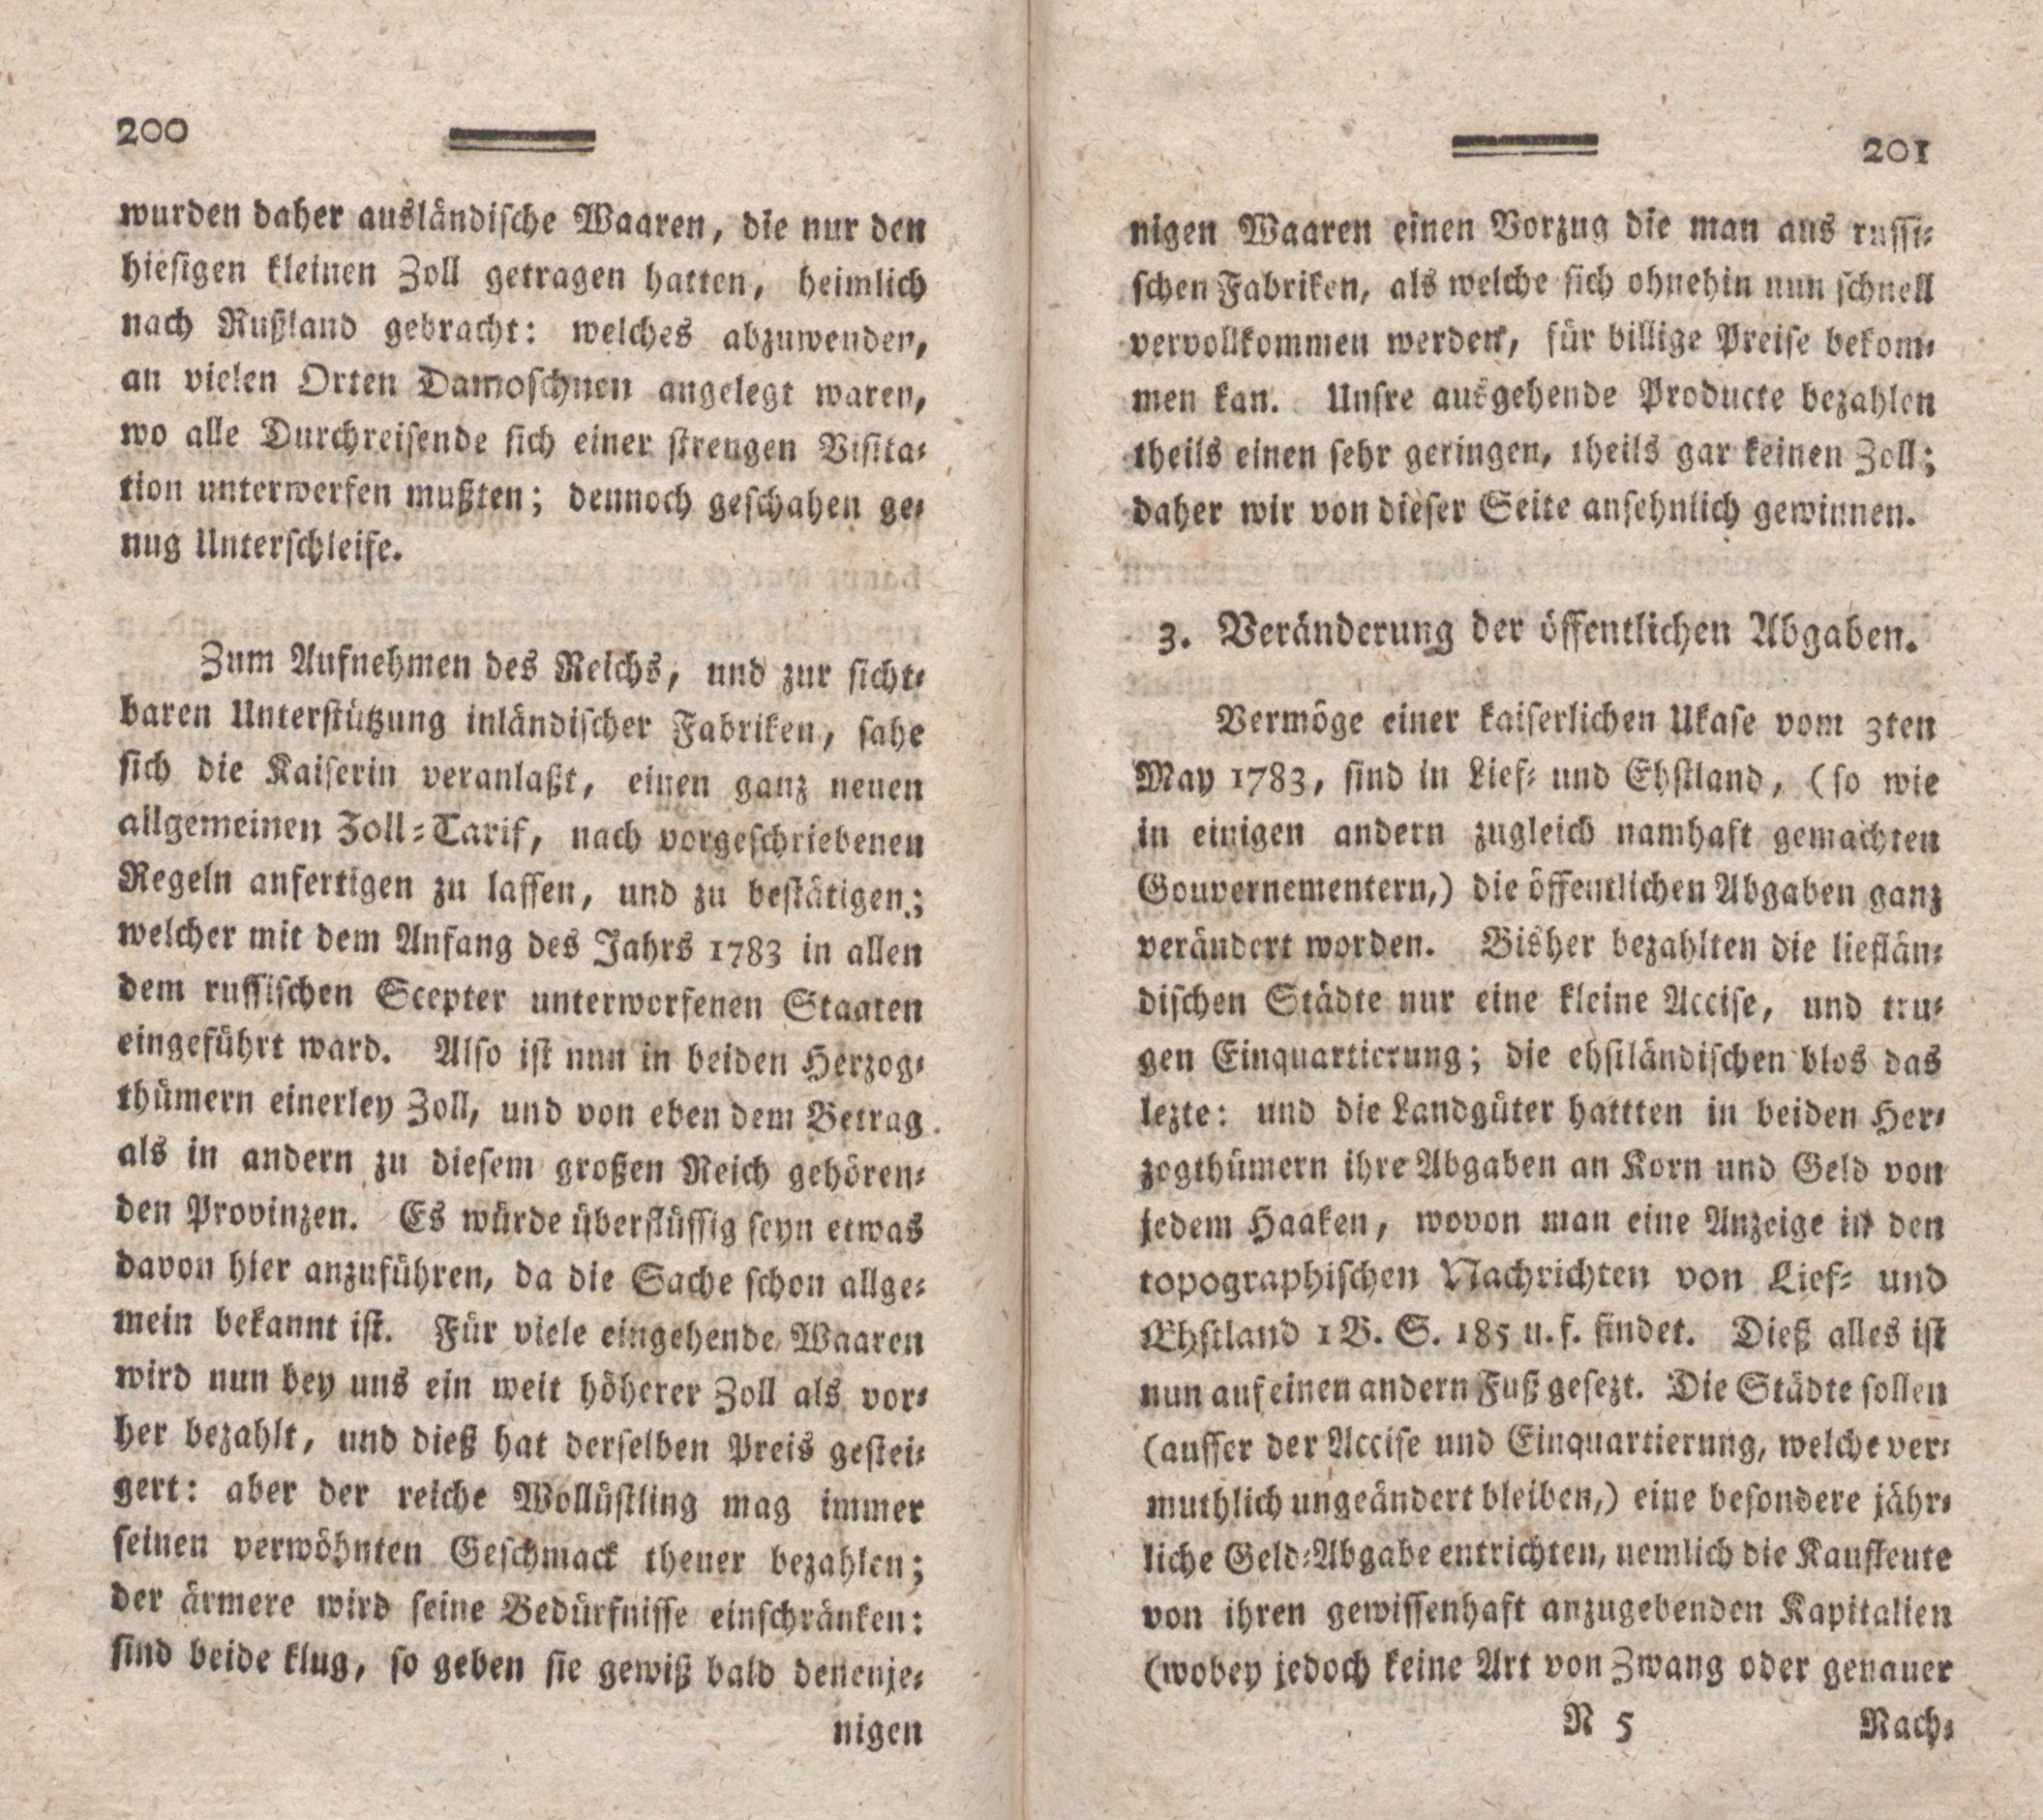 Nordische Miscellaneen [08] (1784) | 101. (200-201) Main body of text